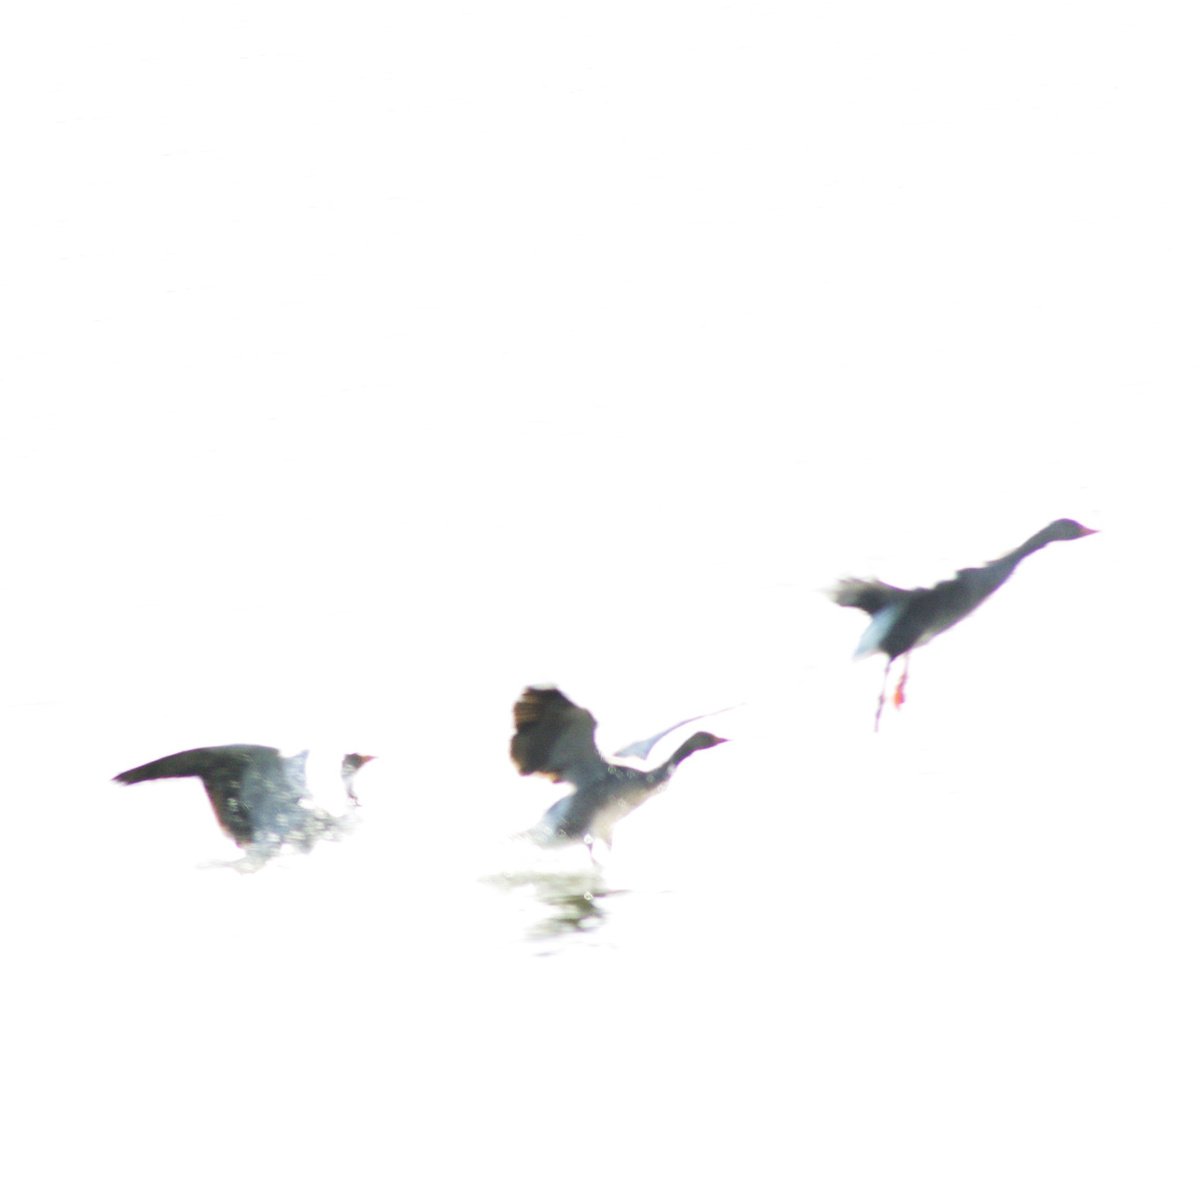 Geese in flight by oconnart